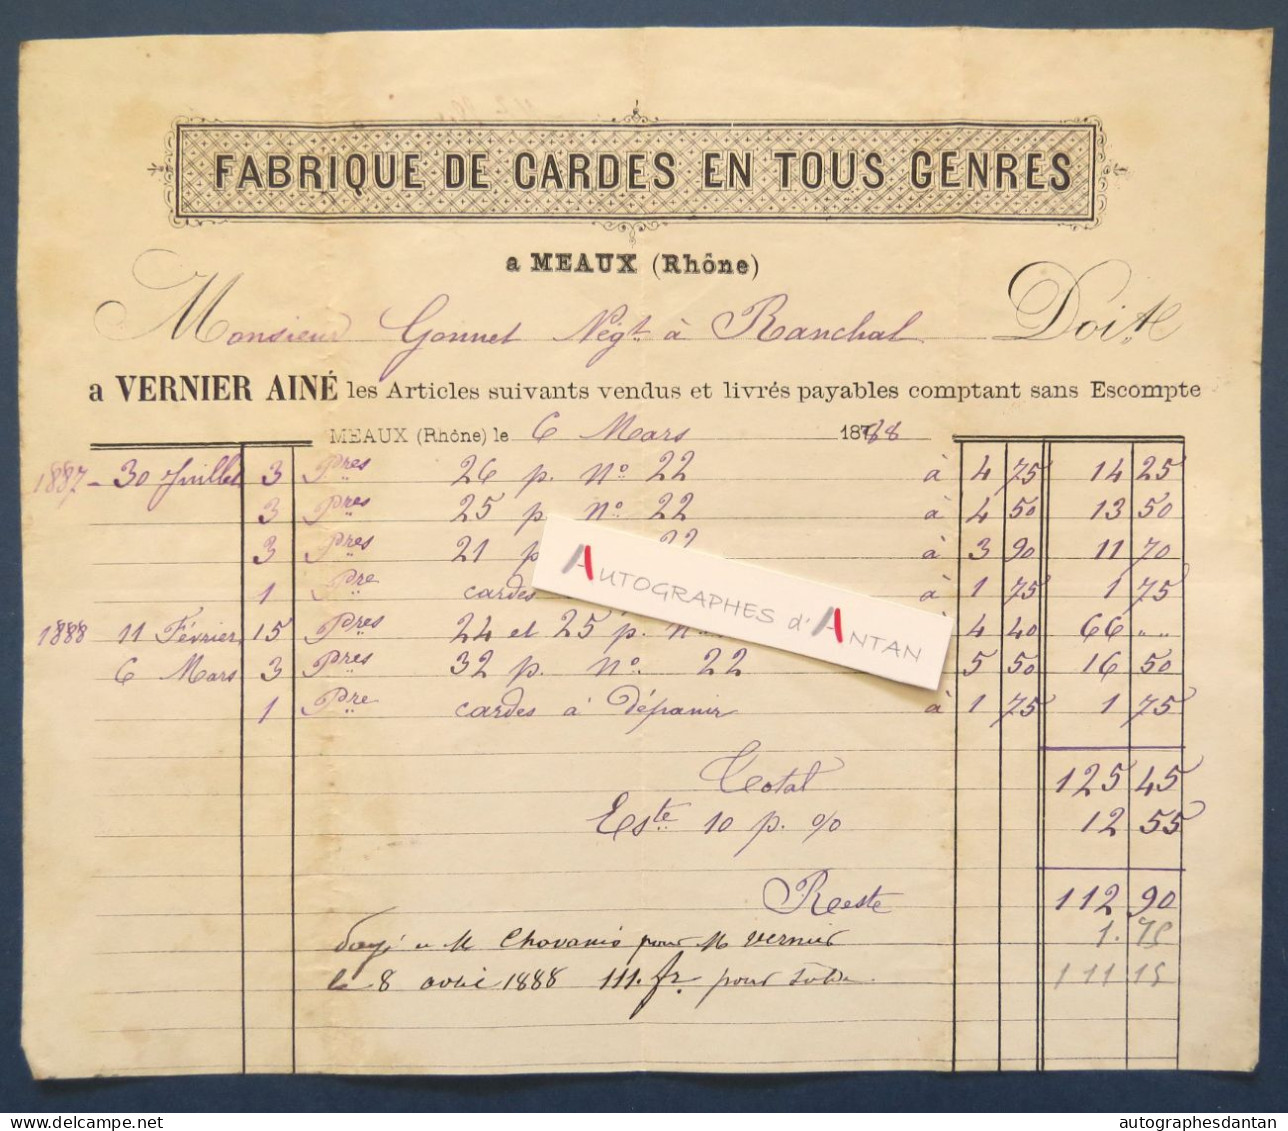 ● MEAUX (la Montagne - Rhône) 1888 - VERNIER Ainé Fabrique De Cardes En Tous Gens - Rare Facture - Gonnet à Ranchal - Petits Métiers